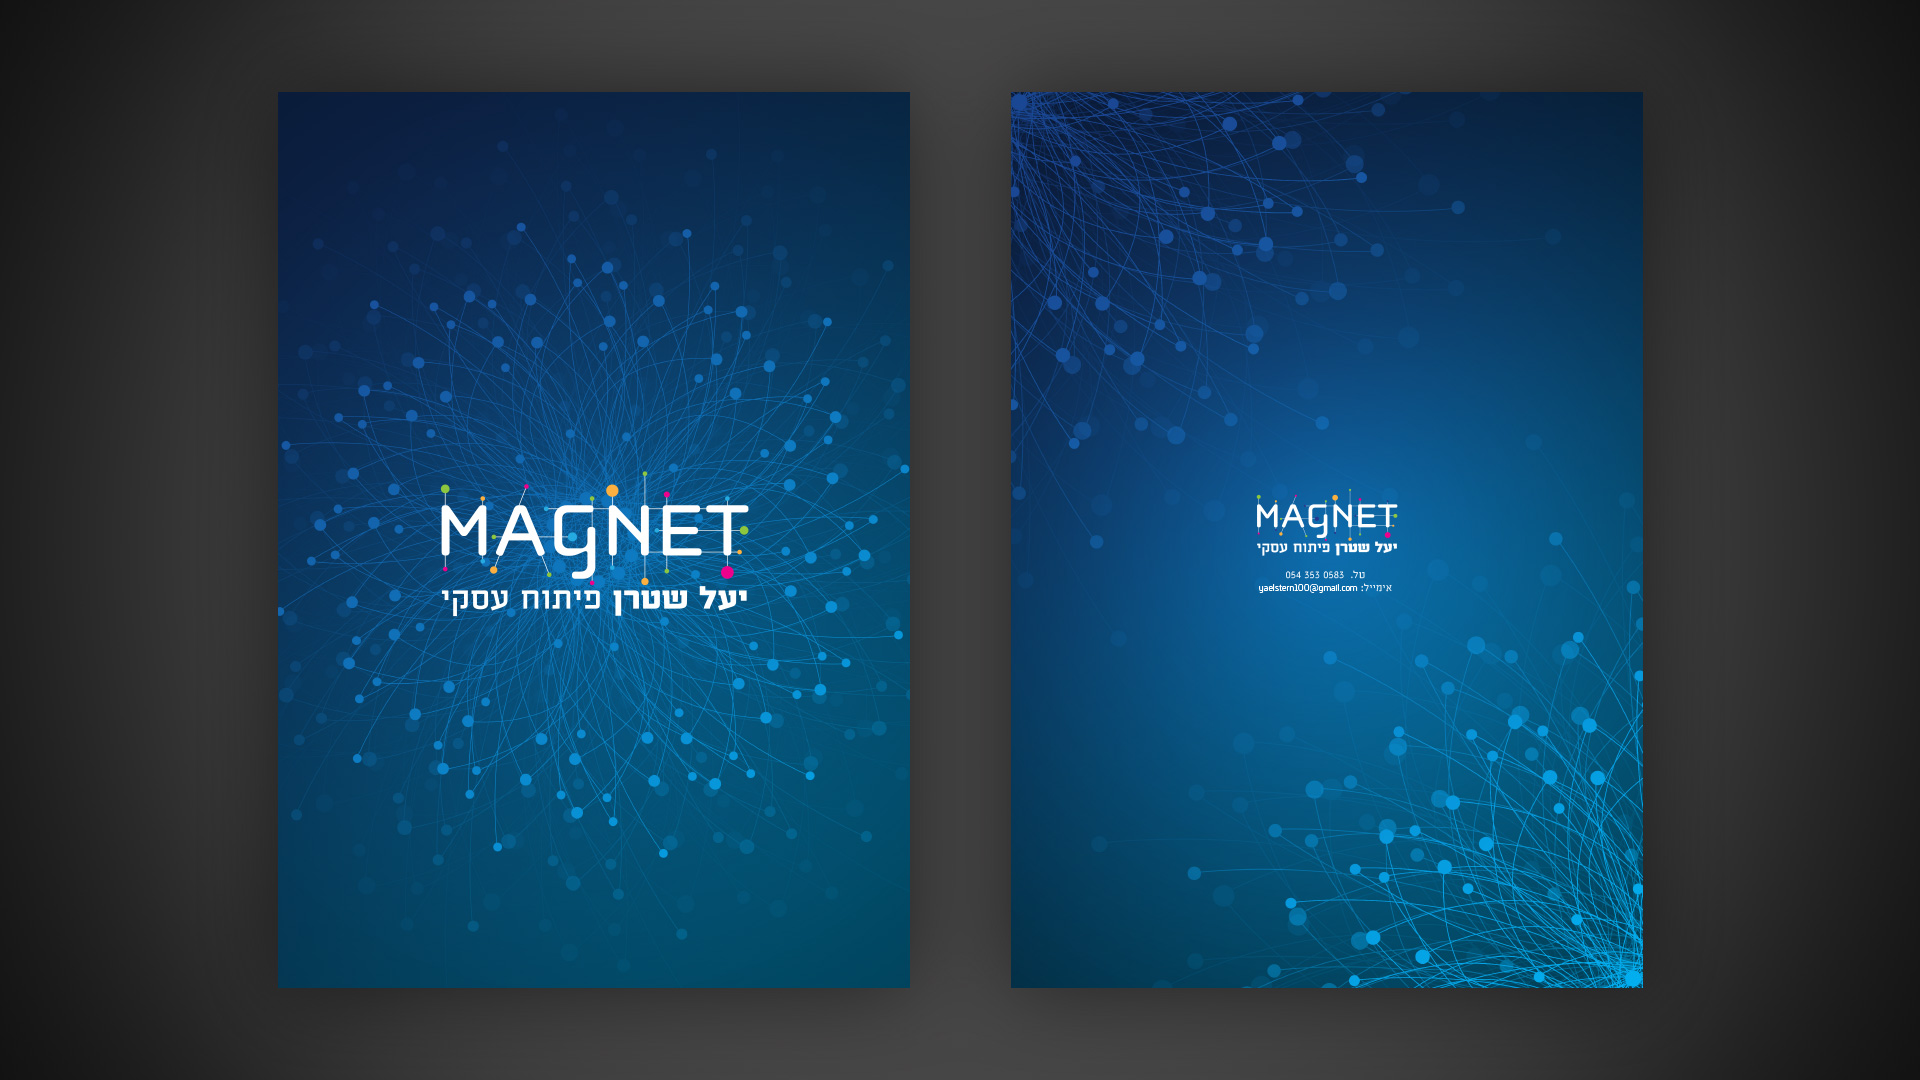 MagNet